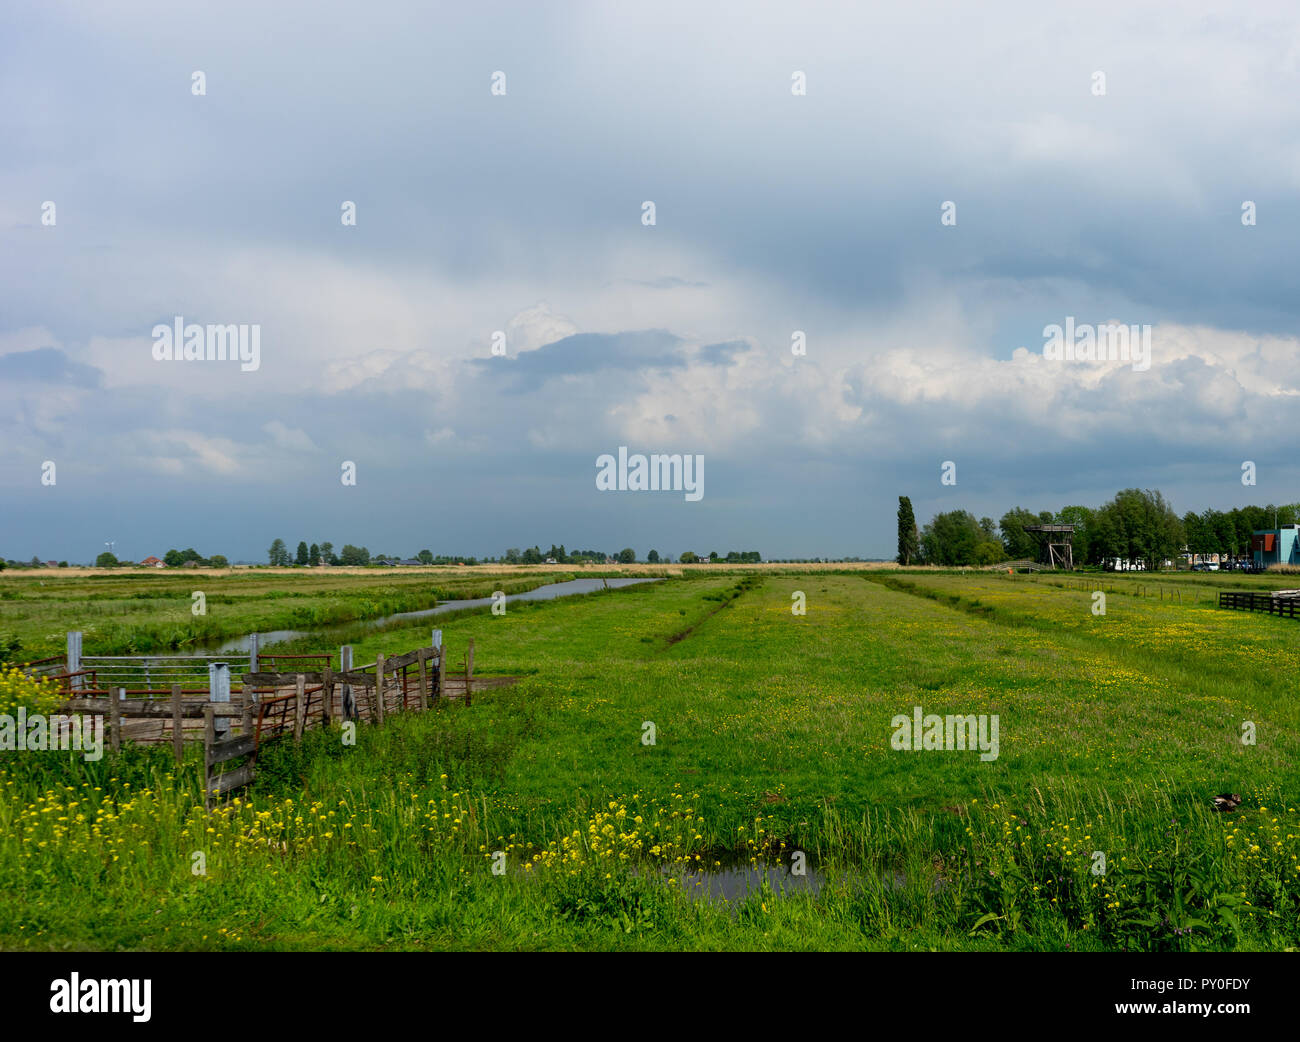 Europe, Netherlands, Zaanse Schans, a large green field Stock Photo